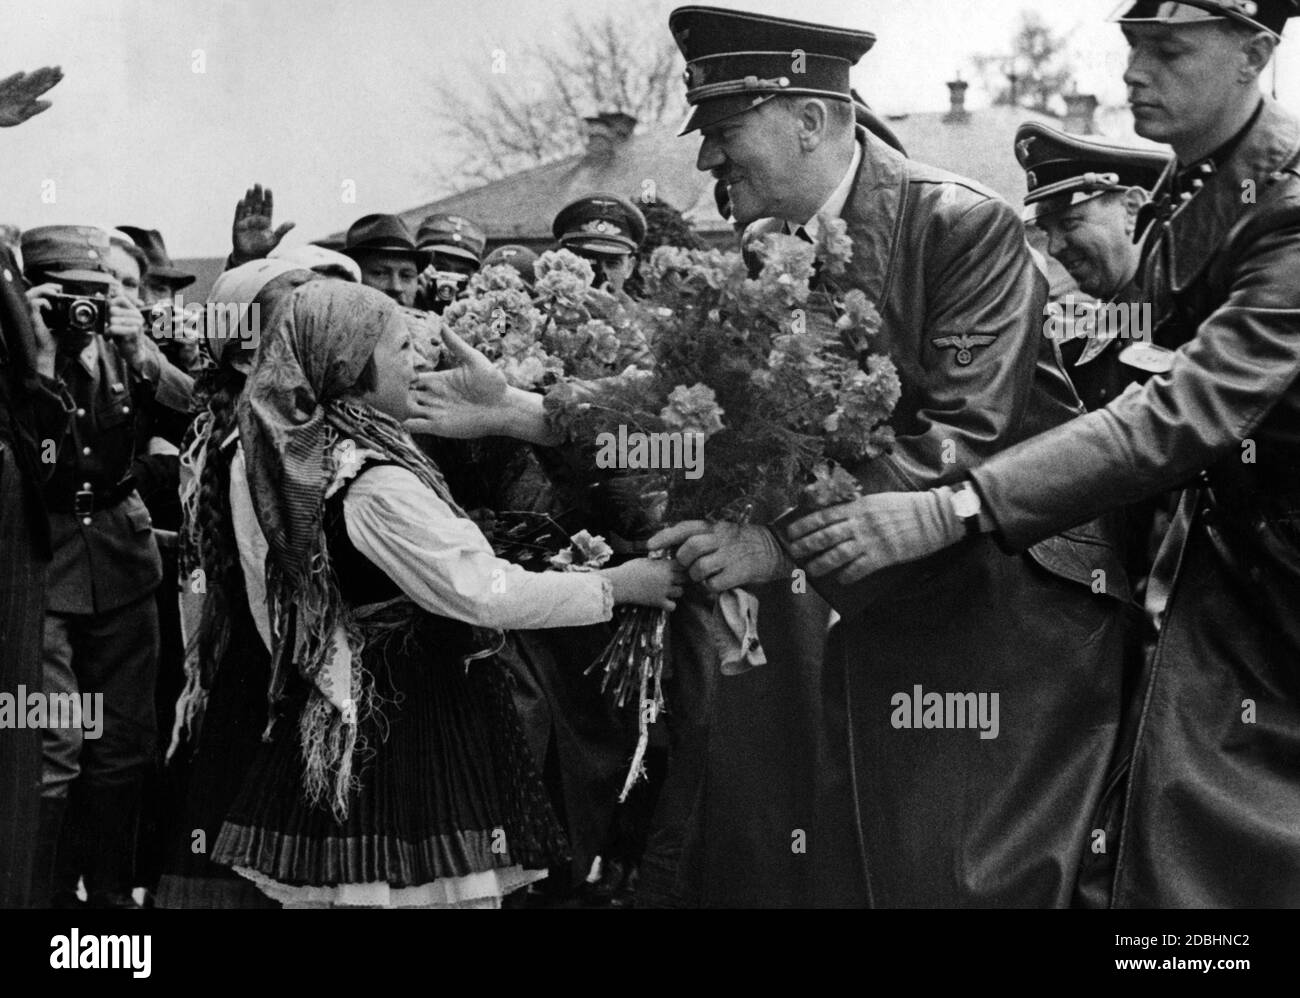 Adolf Hitler patte la guancia di una bambina che lo presenta con un mazzo di fiori. Alle spalle di Hitler Julius Schaub. Maribor - Marburg an der Drau tedesco-austriaco - è stata una città di lingua tedesca in Austria-Ungheria fino al 1918. Foto Stock